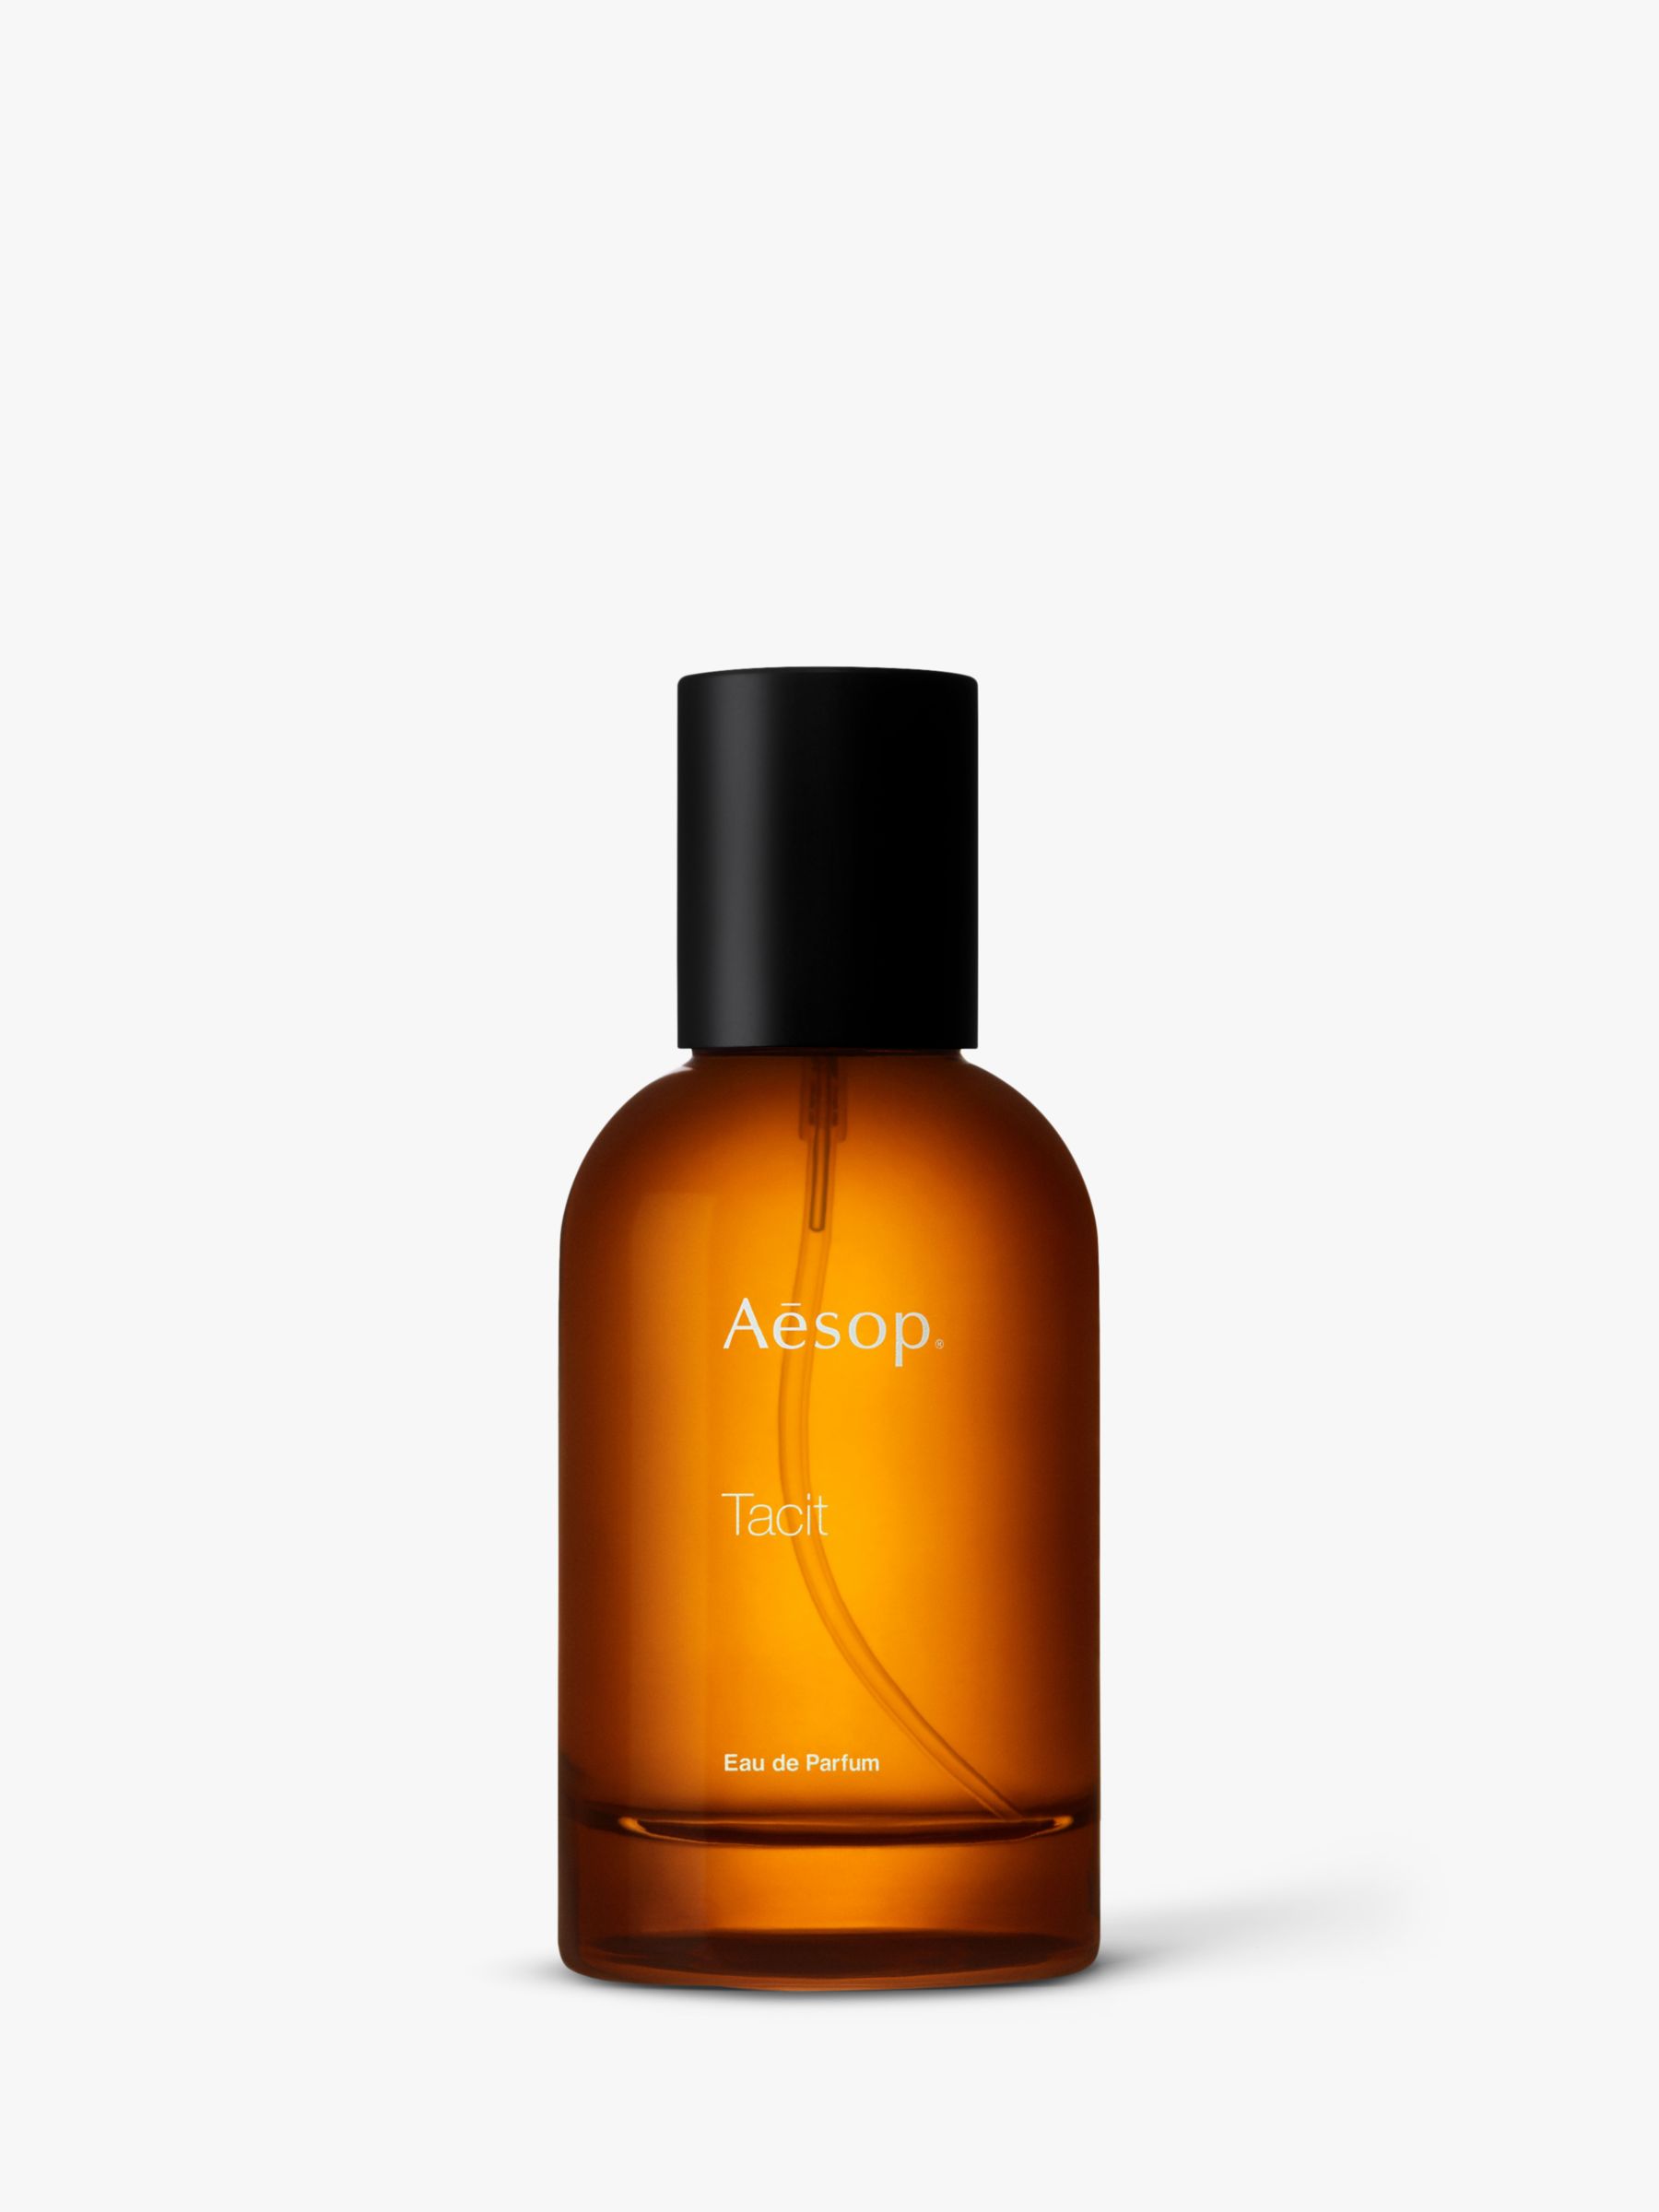 Aesop Tacit Eau de Parfum, 50ml at John Lewis & Partners